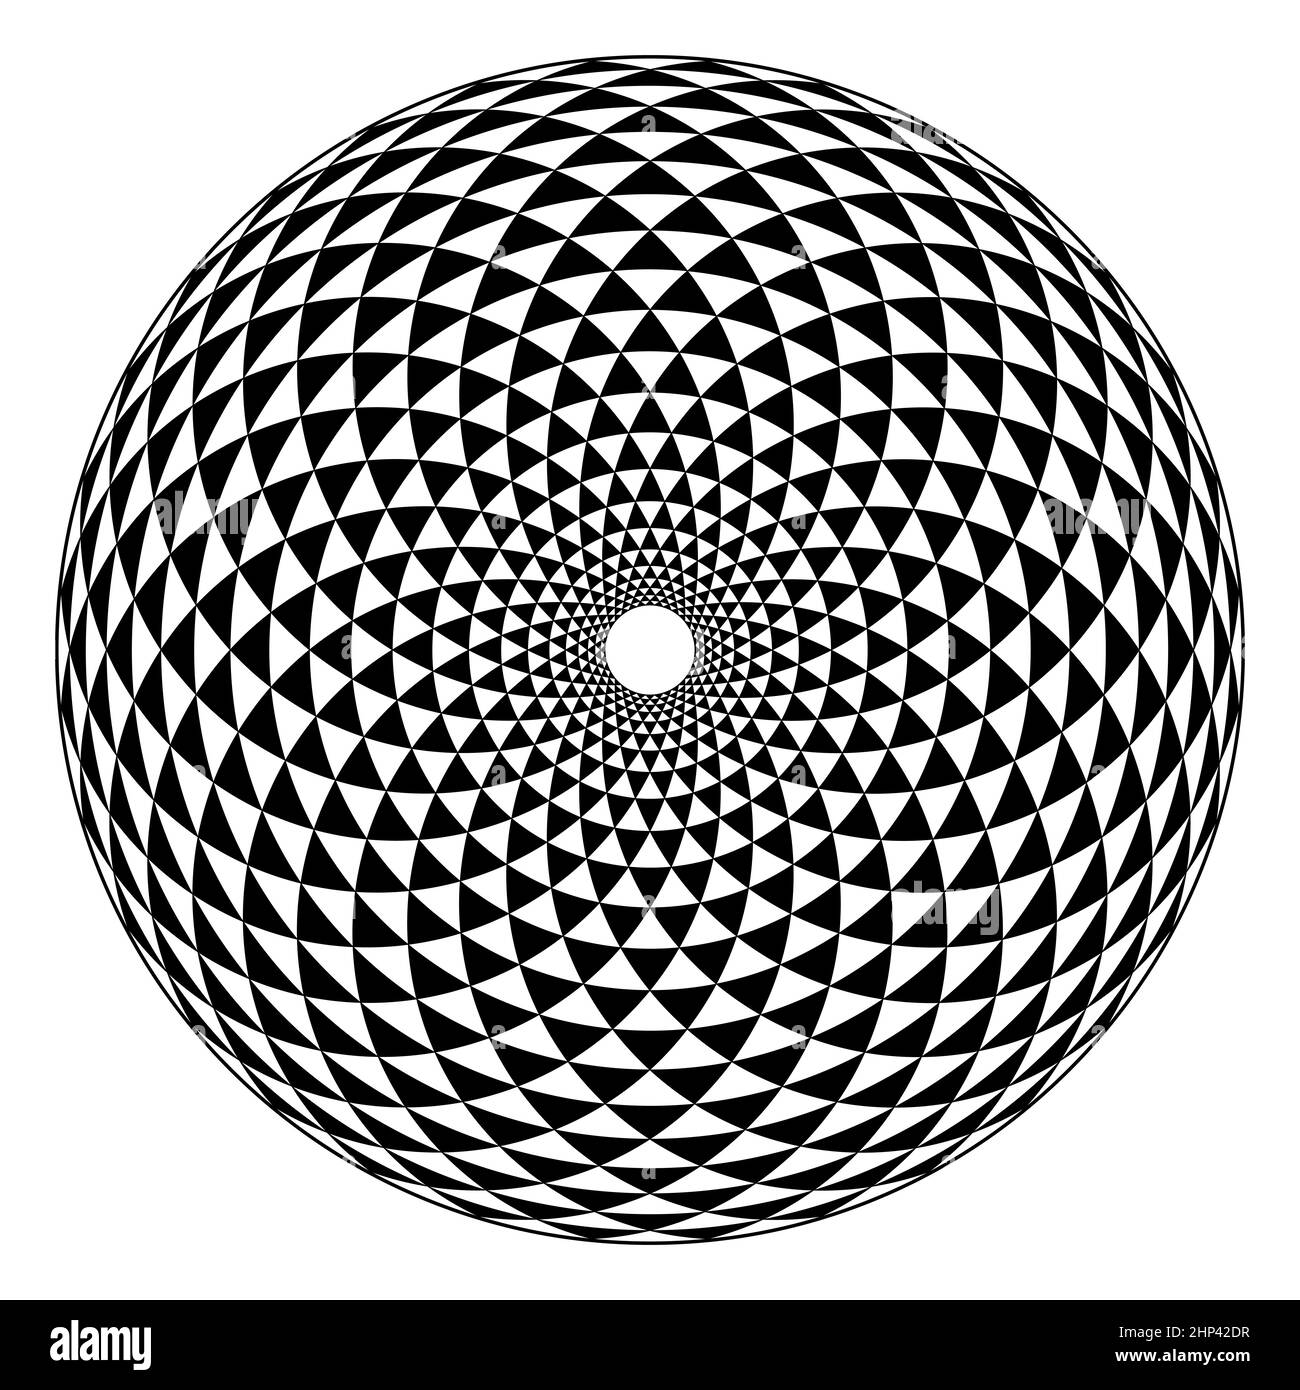 Fibonacci-Muster, schwarz-weißes Dreieck karierter Kreis, gebildet durch Bögen, spiralförmig angeordnet, durch Kreise gekreuzt, wodurch Biegedreiecke entstehen. Stockfoto